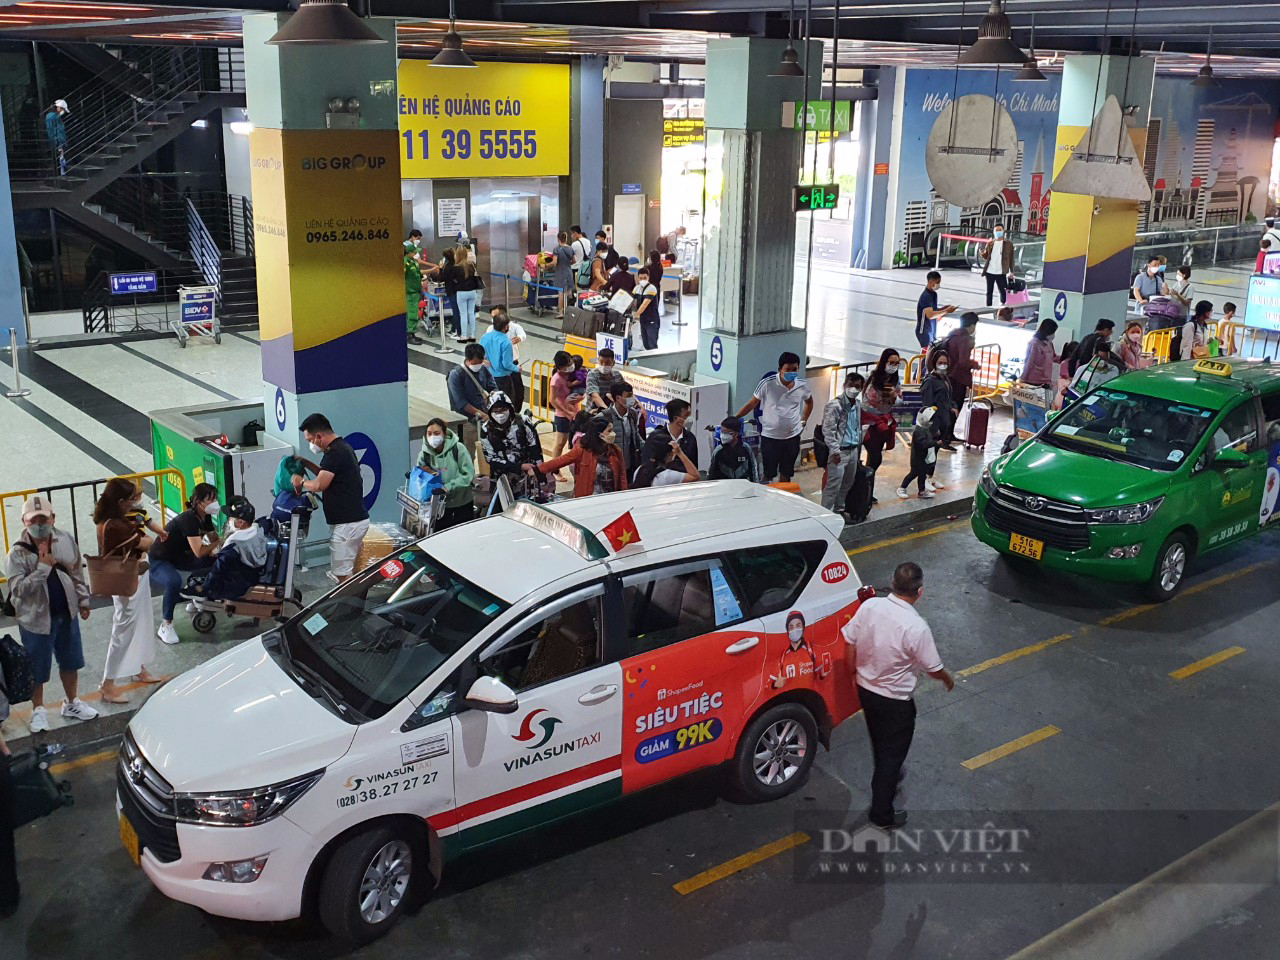 Thêm hãng xe công nghệ vào Tân Sơn Nhất đón khách, Grab, Be, taxi truyền thống phải dè chừng - Ảnh 2.